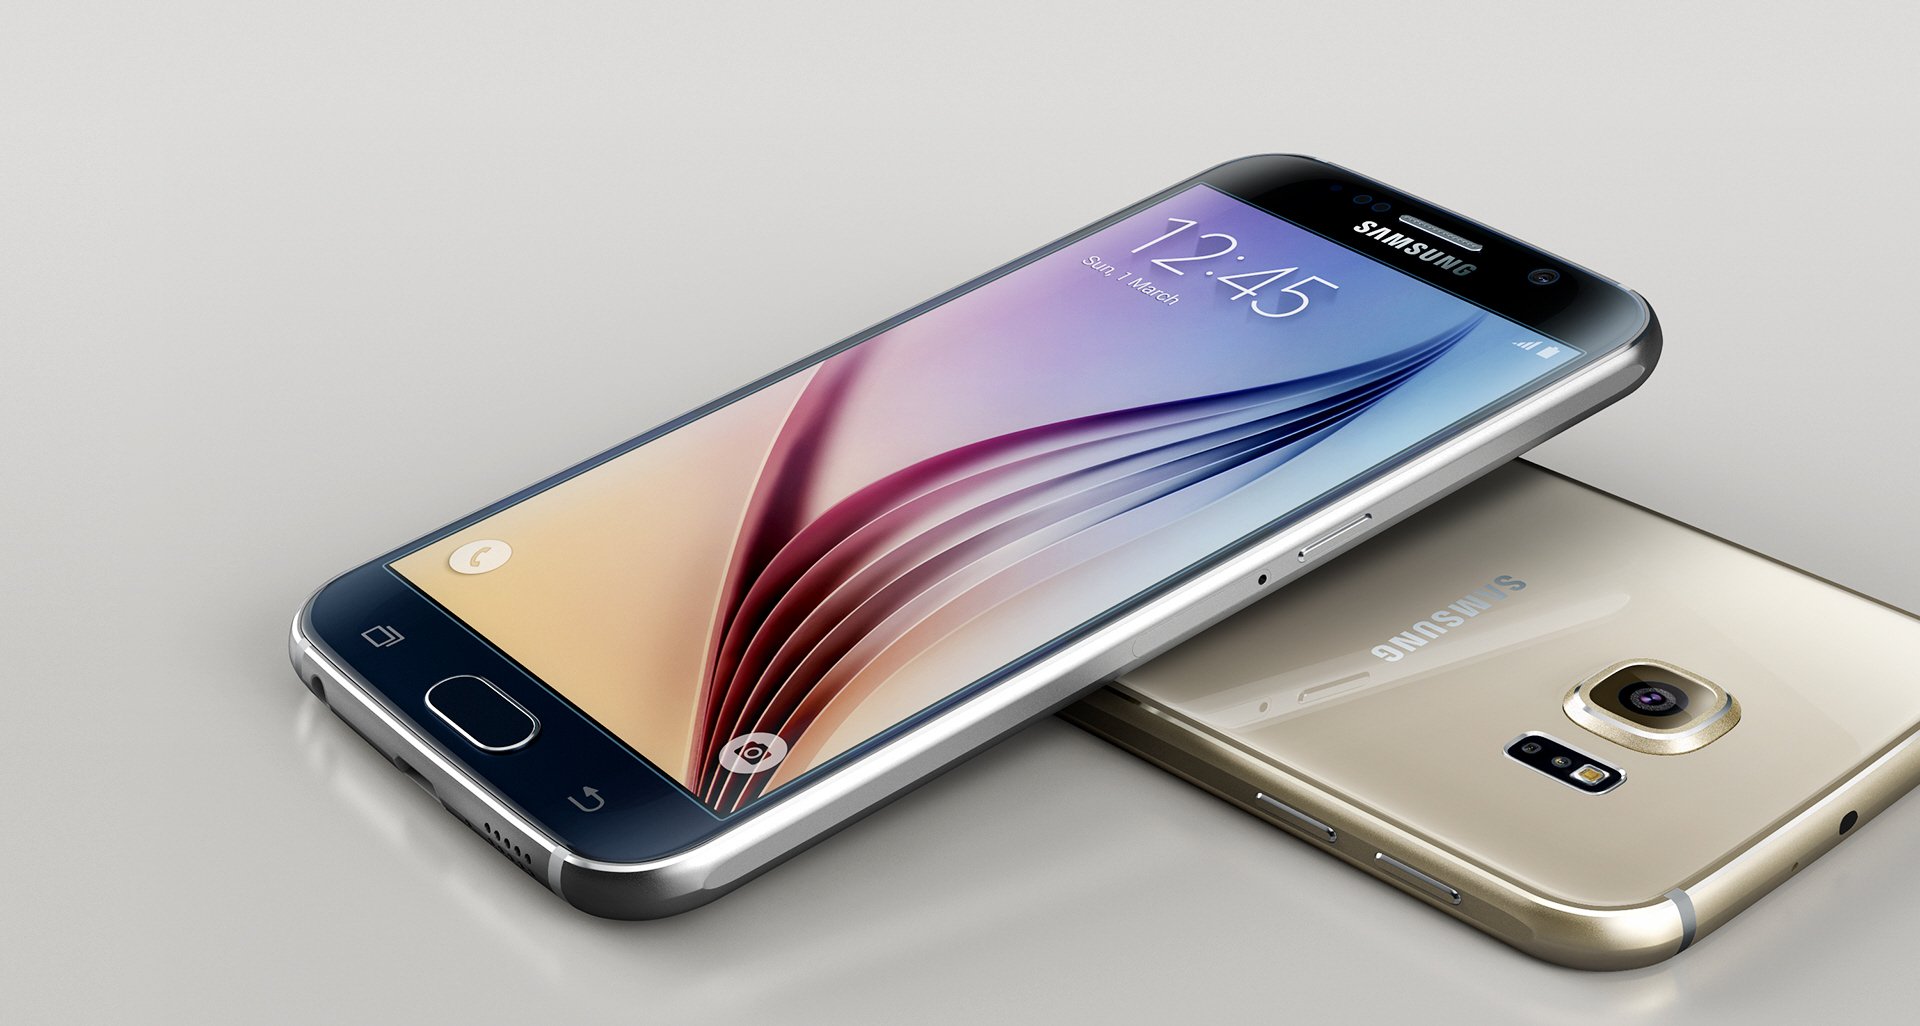 Instrueren Verwarren brandwonden Samsung Galaxy S6 specs, review, release date - PhonesData